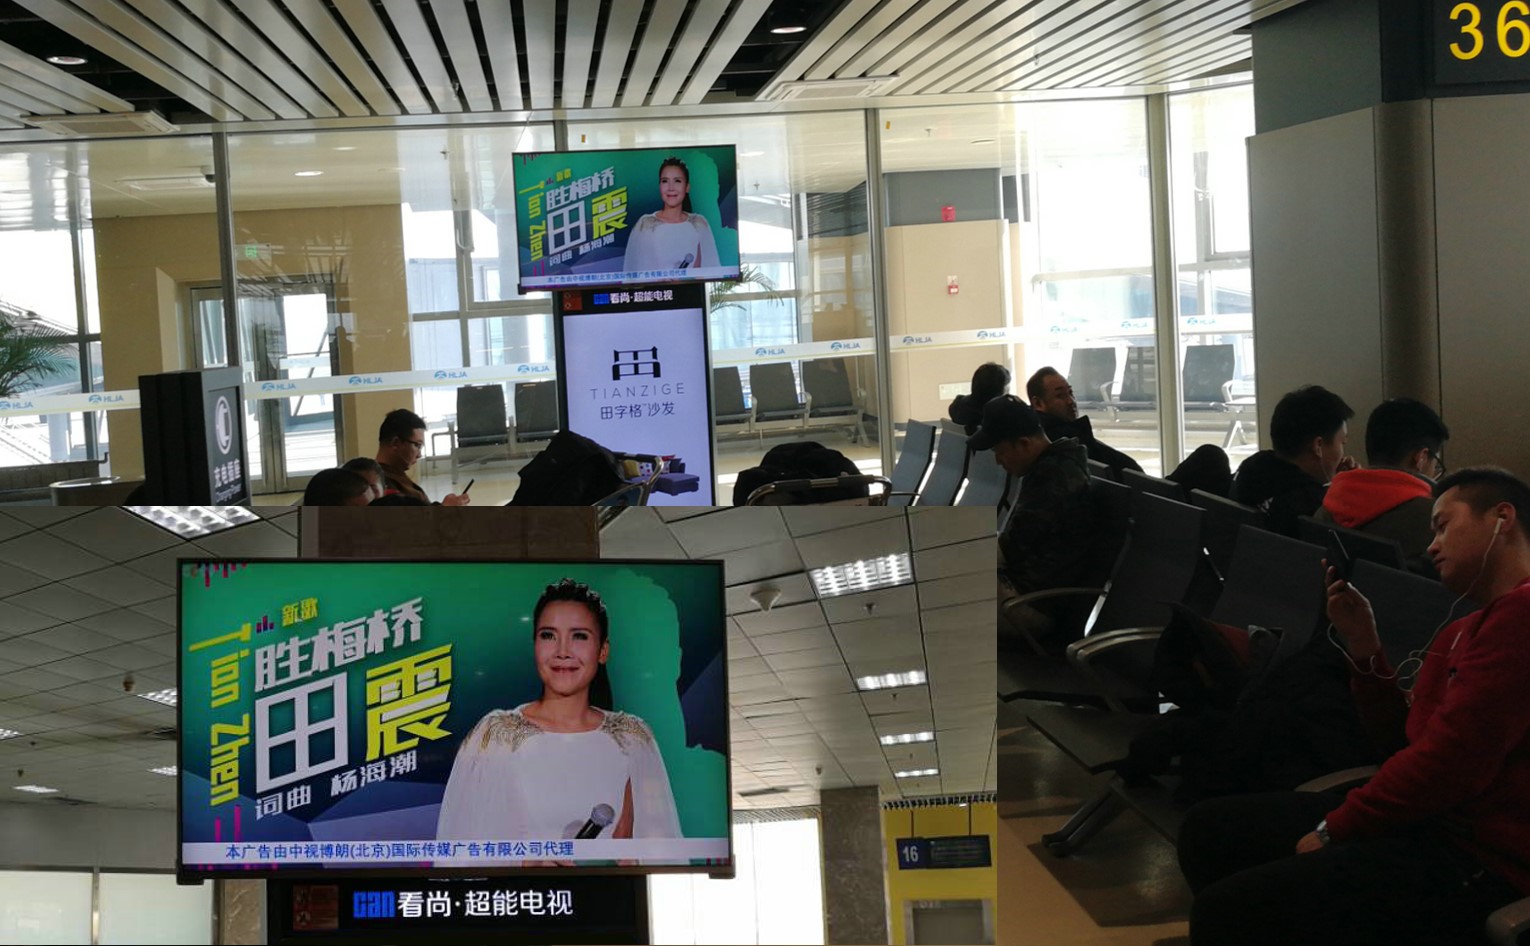 哈尔滨 机场,LED屏幕,电子屏广告